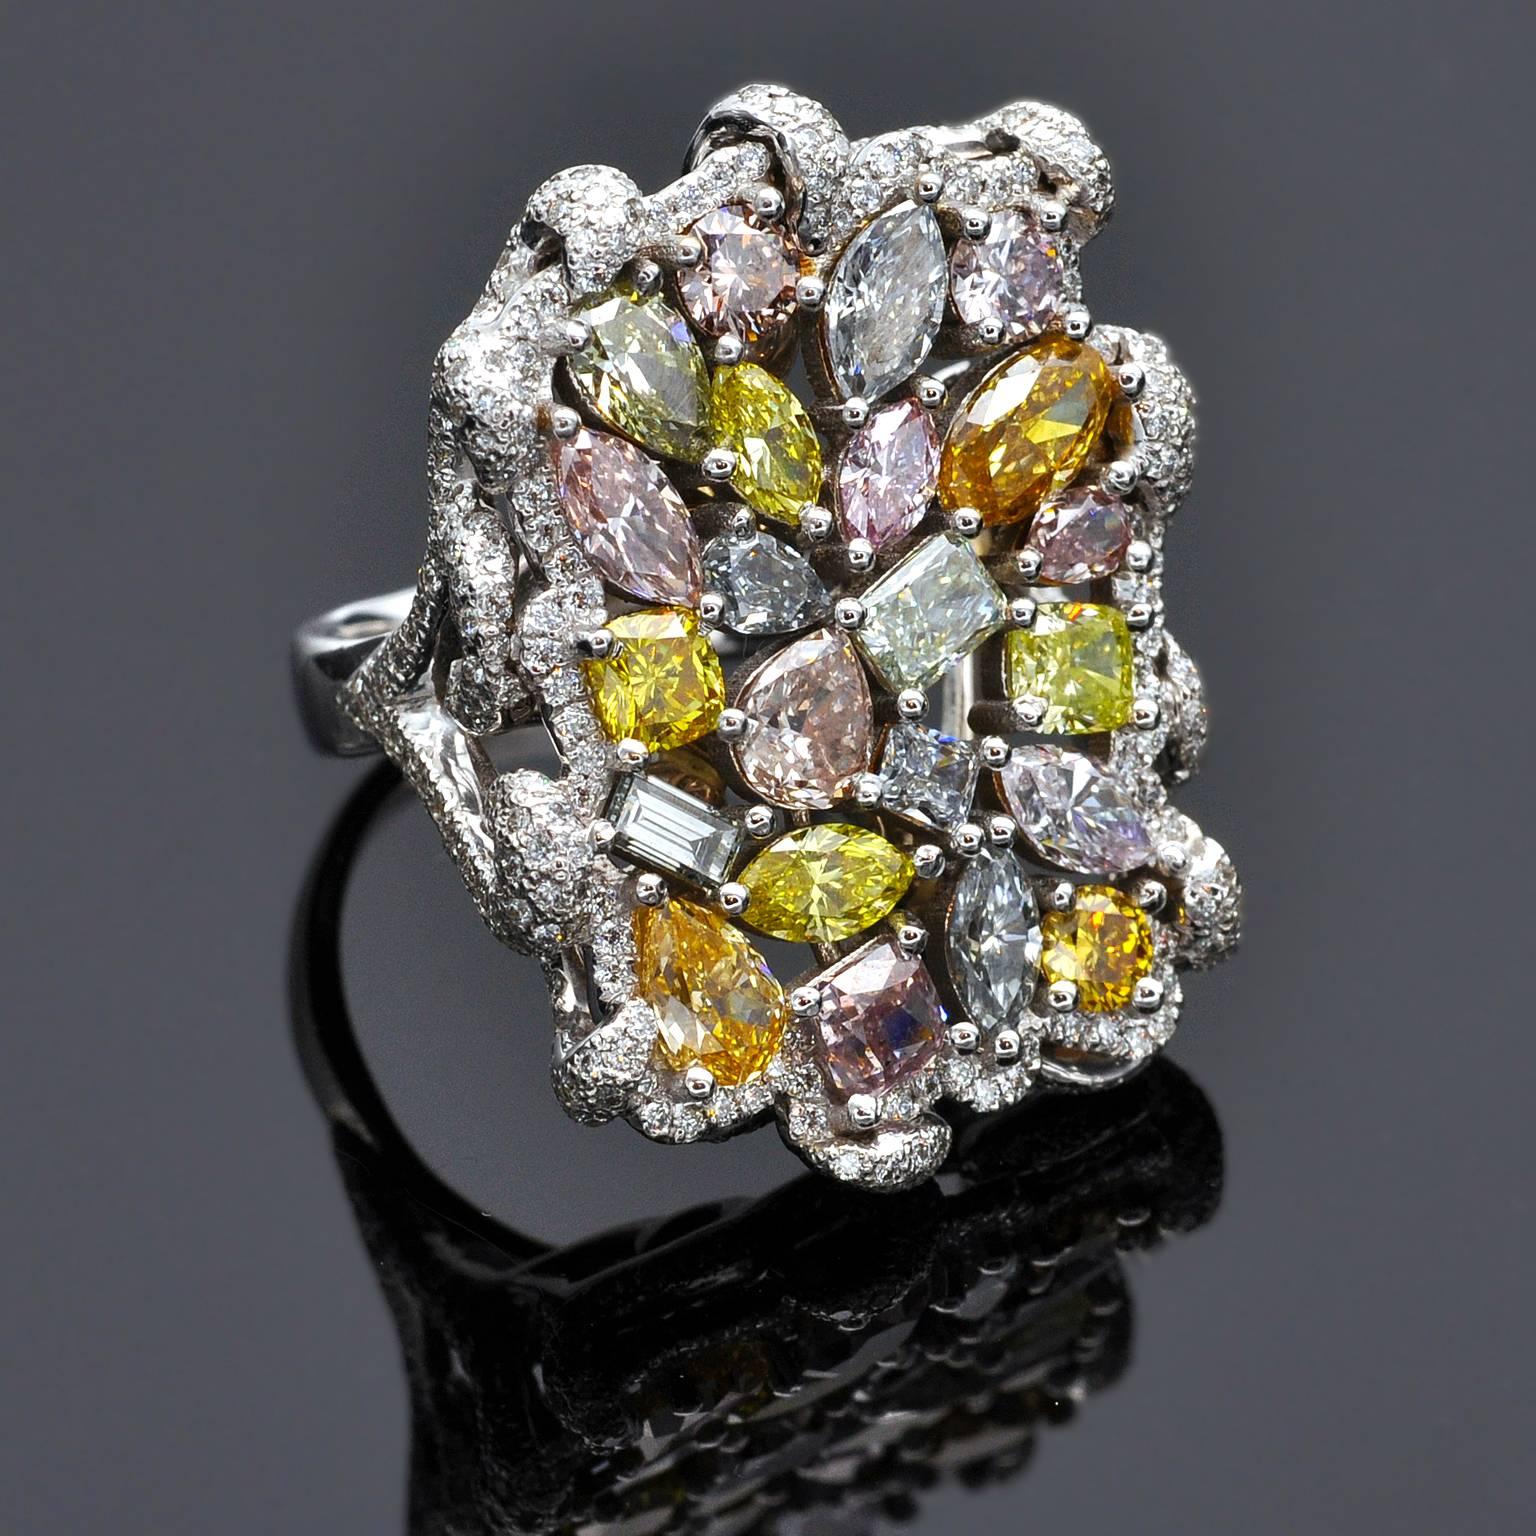 Unglaublich! Für Sammler! Eine Fancy Colored Natural Diamond Kollektion, deren Zusammenstellung Jahre gedauert hat, in einem erstaunlich anmutigen, einzigartigen Ring.
Die zweiundzwanzig Fancy-Diamanten sind alle mit einem GIA-Zertifikat versehen